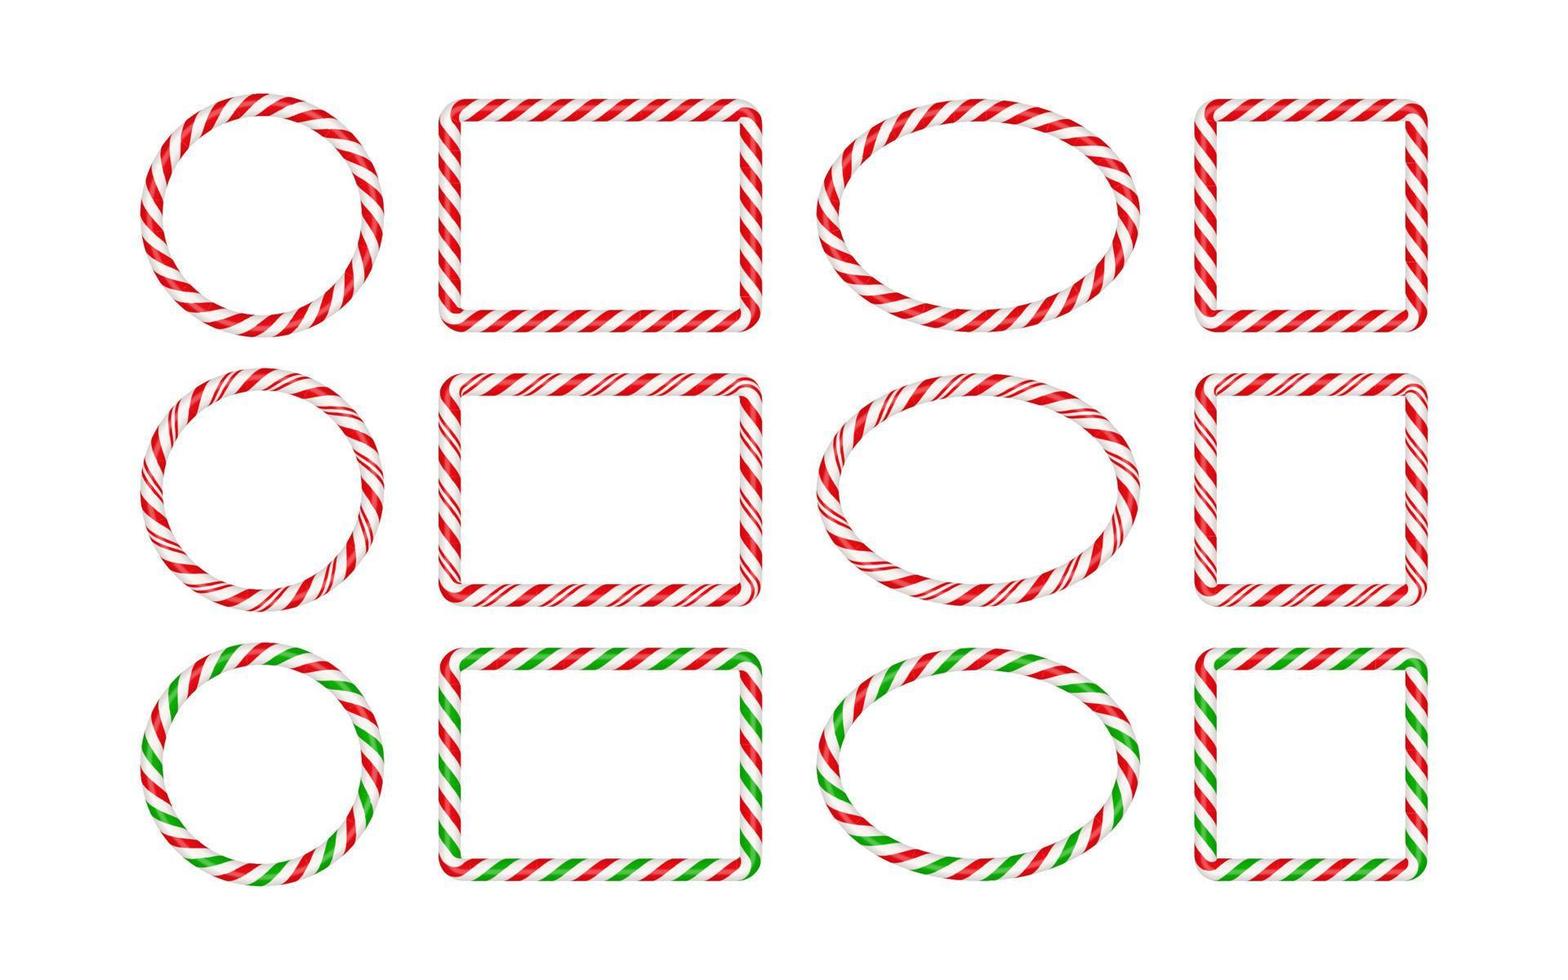 marcos de bastón de caramelo de navidad con rayas rojas y verdes. círculo de navidad, ovalado, borde cuadrado con patrón de piruleta de caramelo a rayas. Ilustración de vector de plantilla de Navidad en blanco aislado sobre fondo blanco